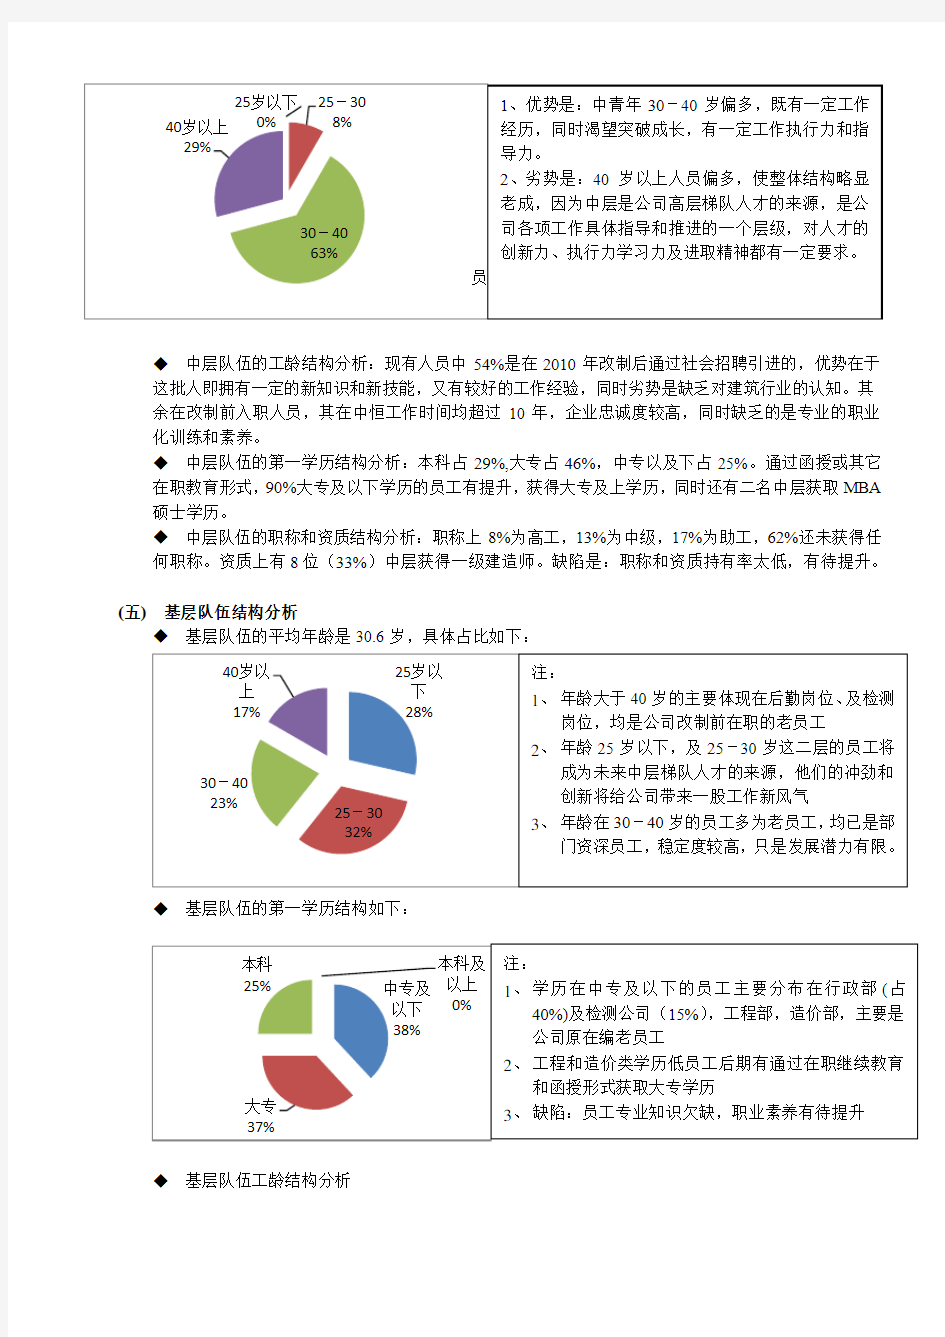 公司年度人力资源状况分析2013